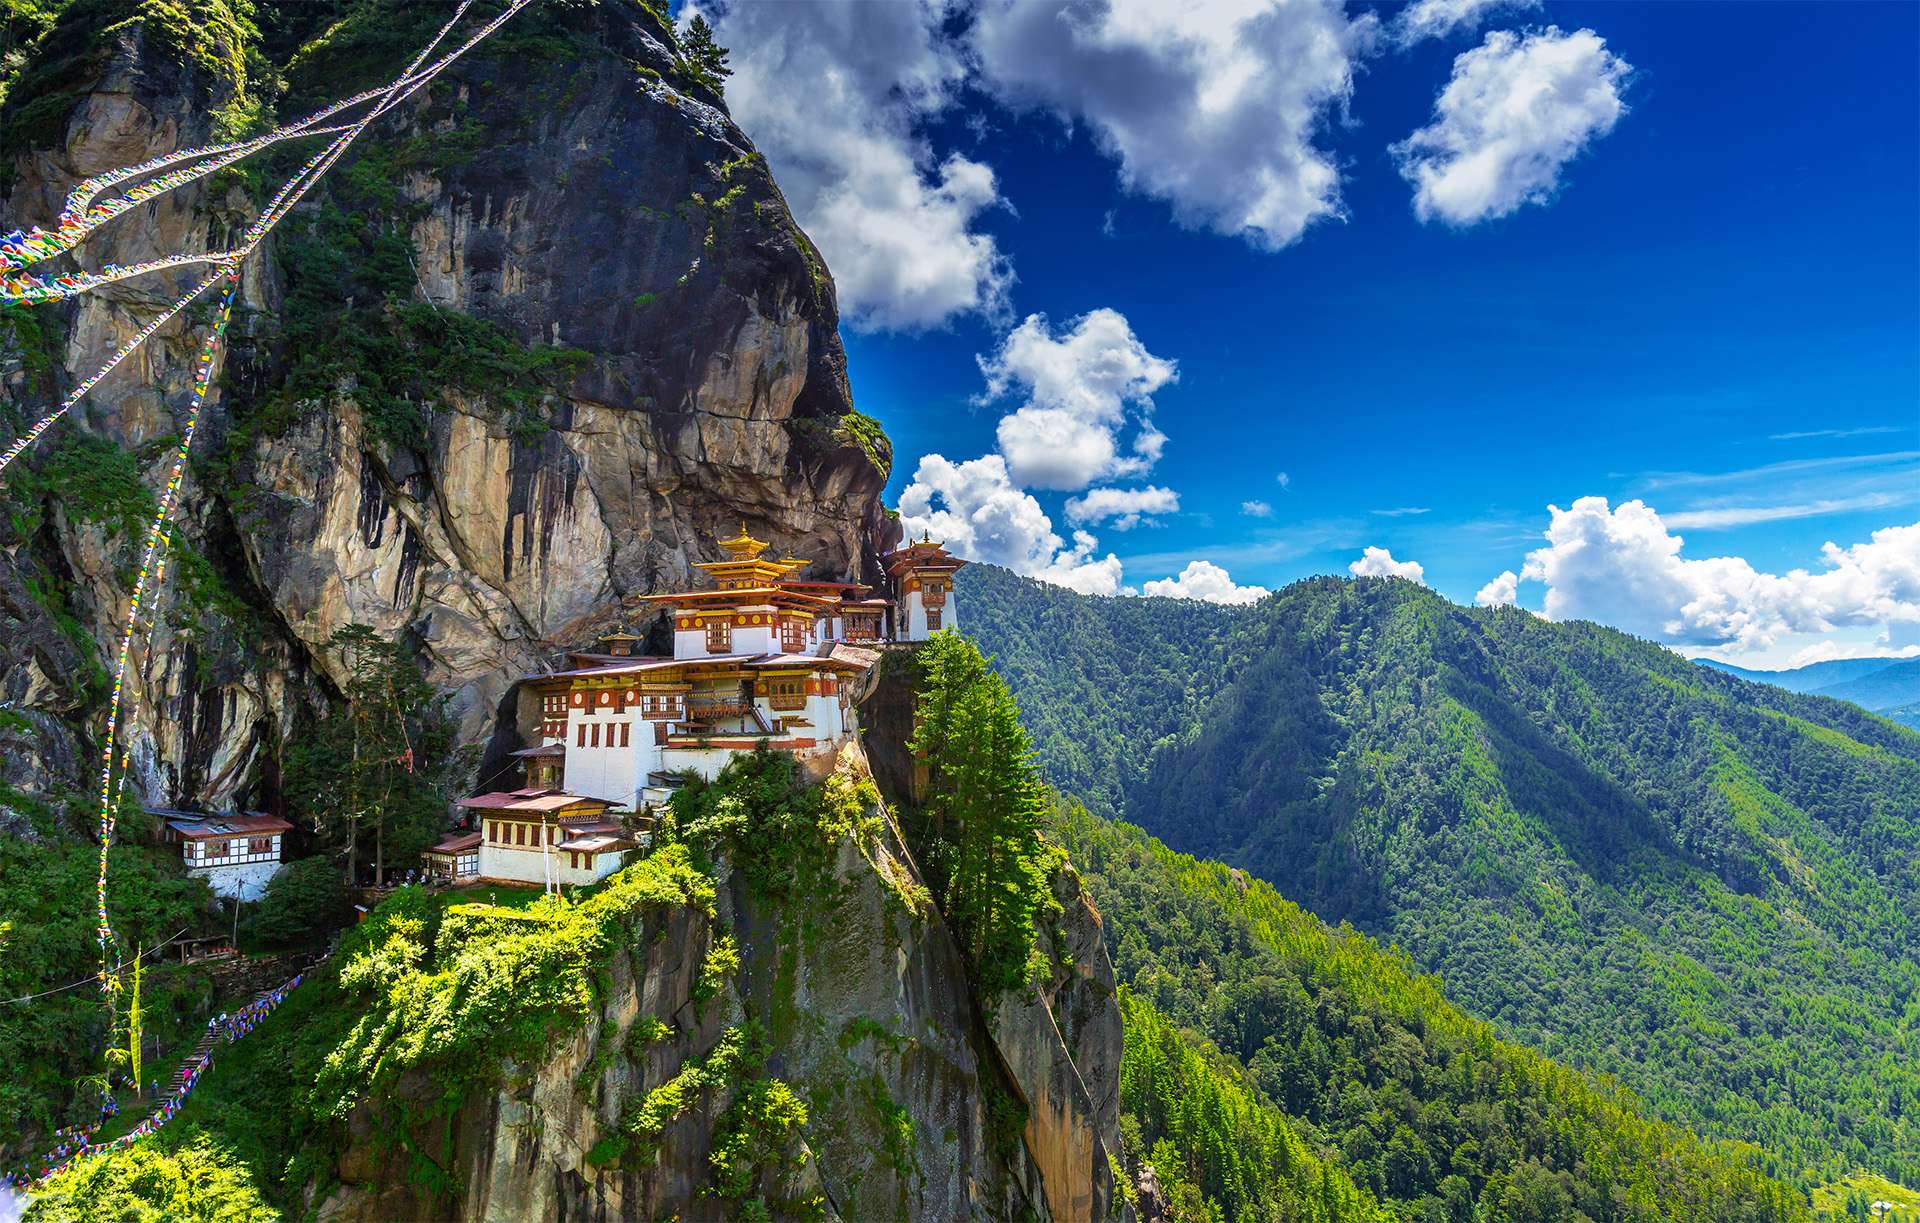 Taktshang Goemba, Tiger nest monastery, Bhutan